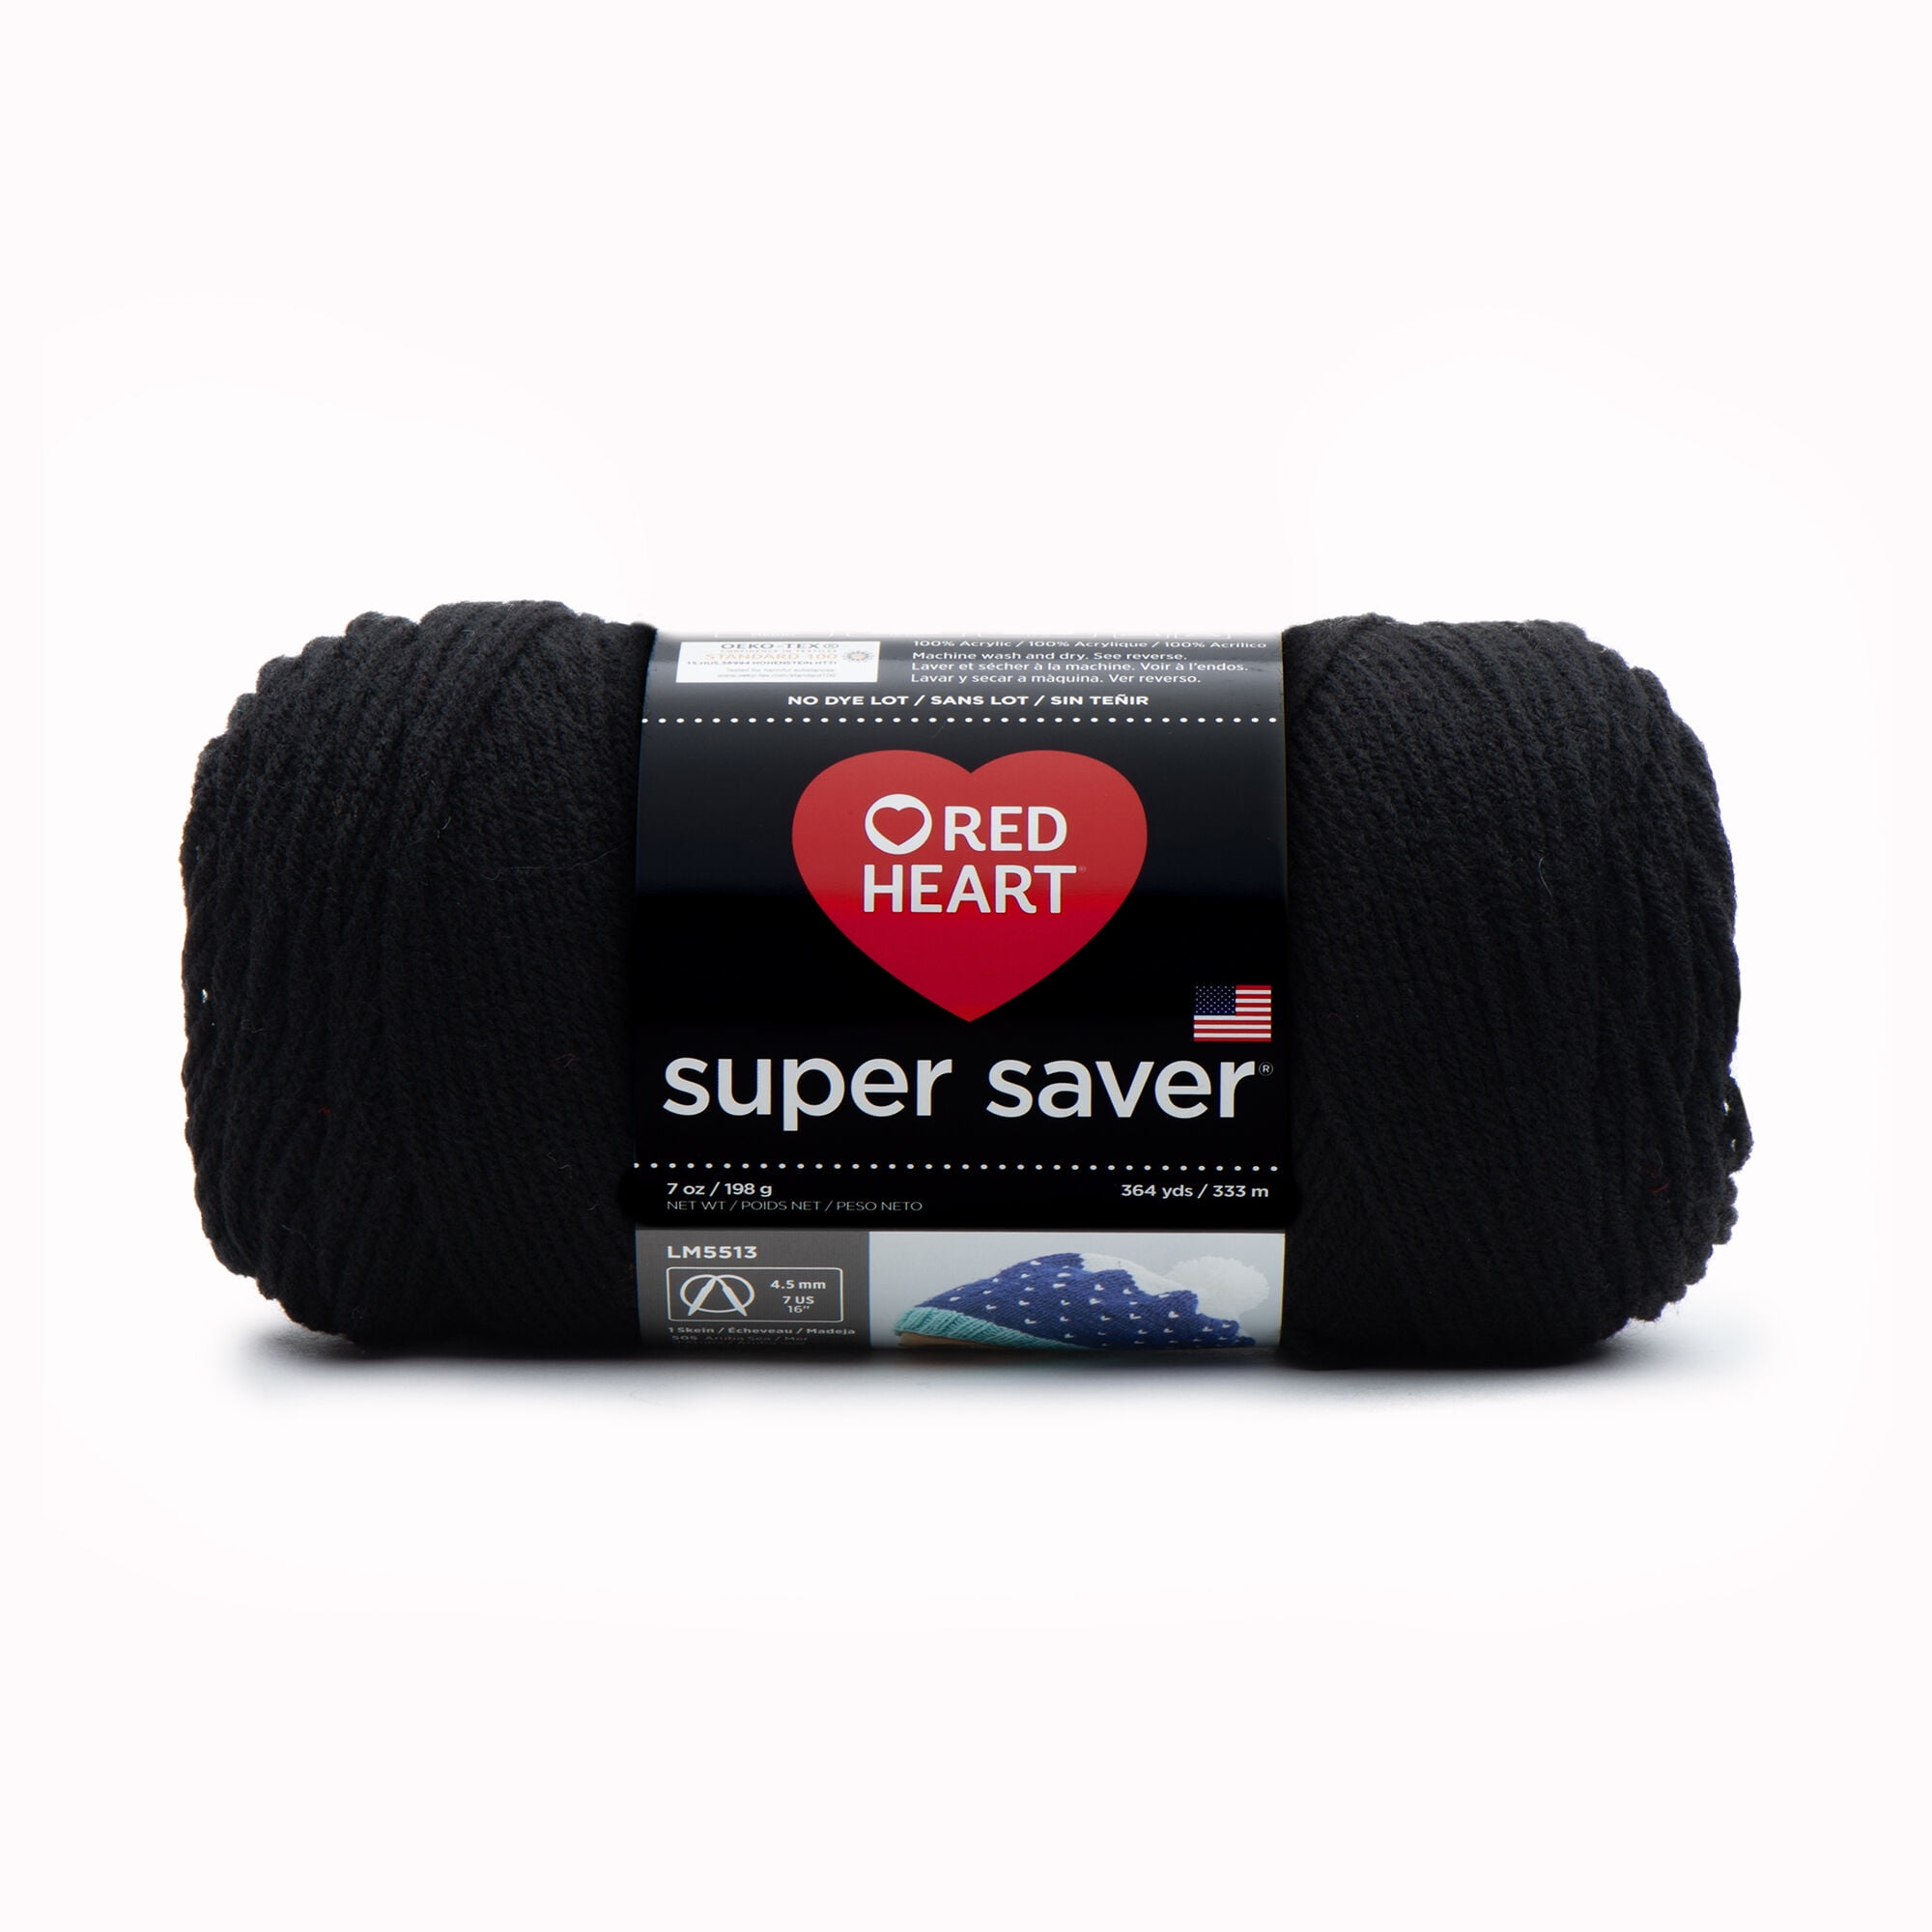 Red Heart Yarn Black Reflective Yarn (5 - Bulky), Free Shipping at